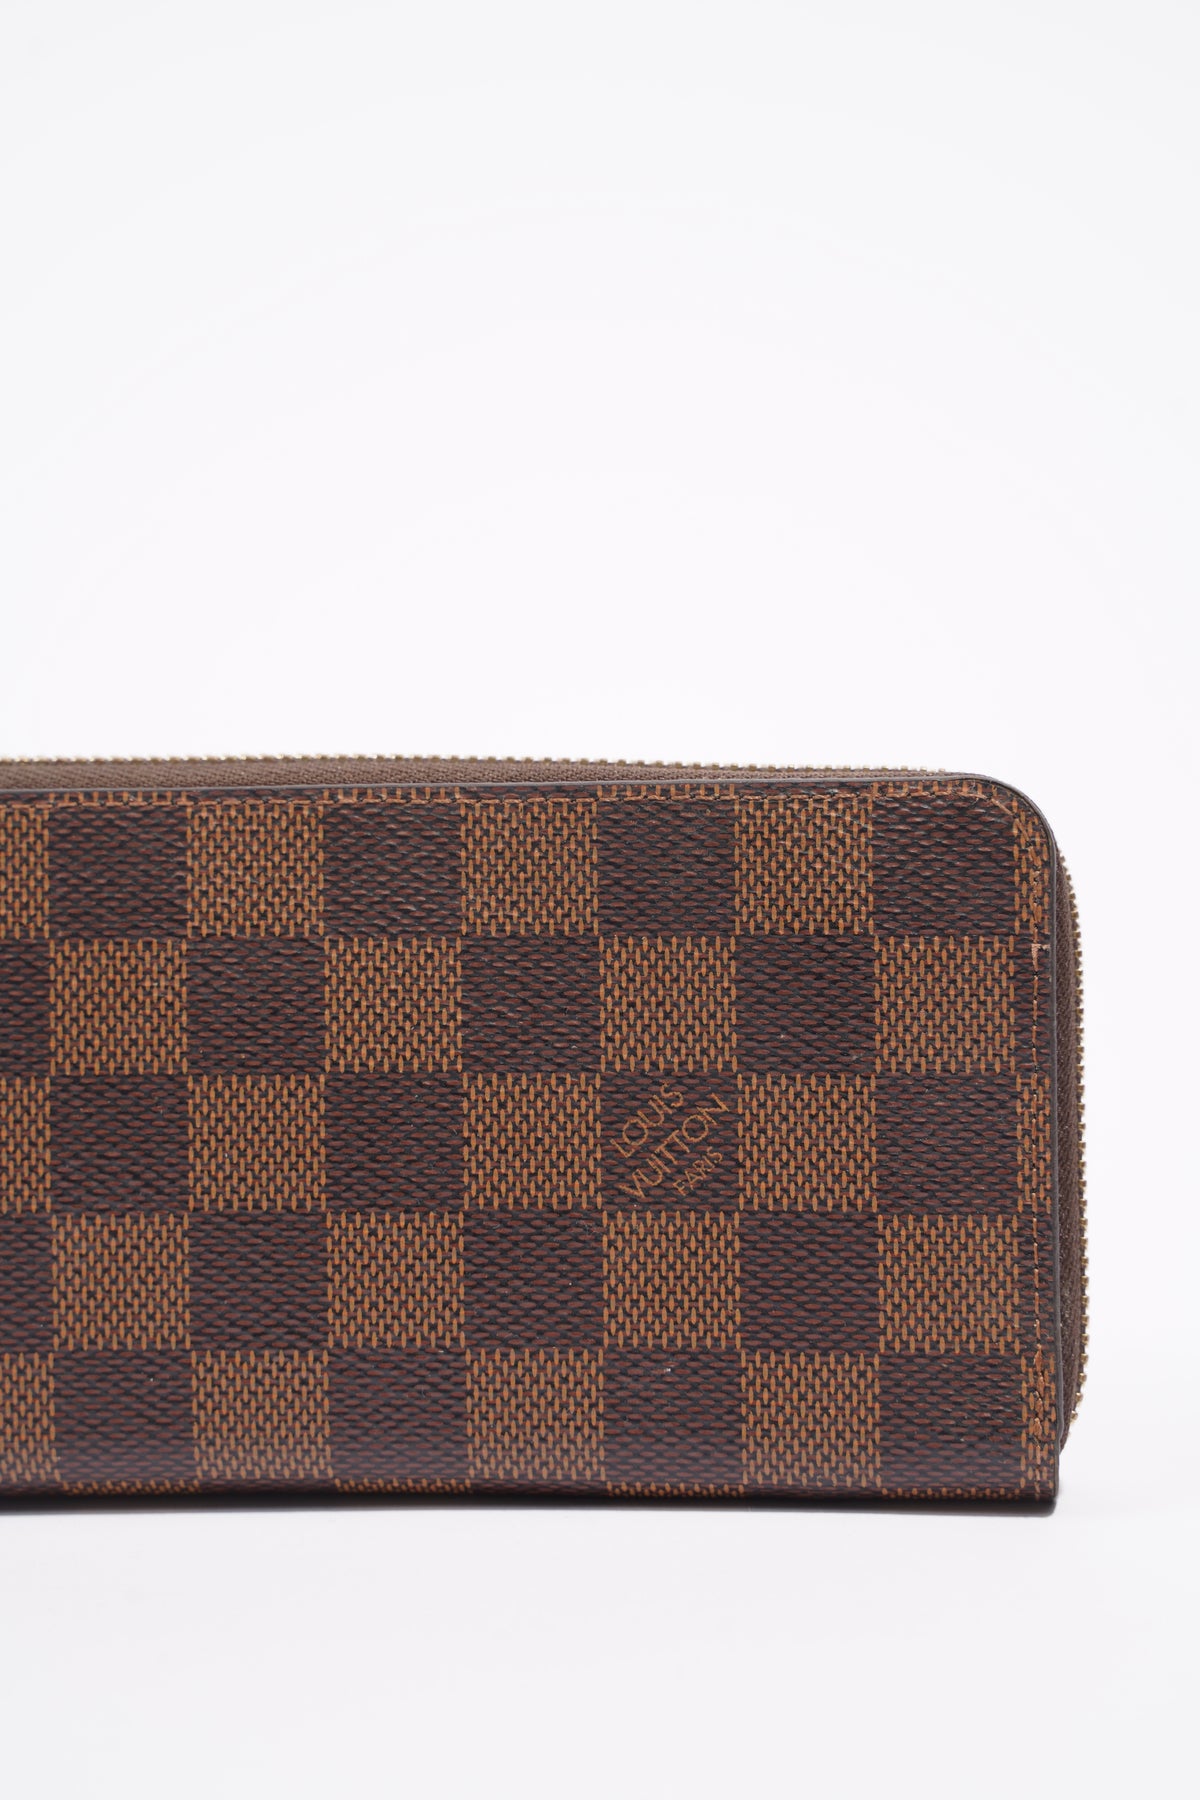 Custom Louis Vuitton Clemence Wallet - Damier Ebene - Design Custom Bags